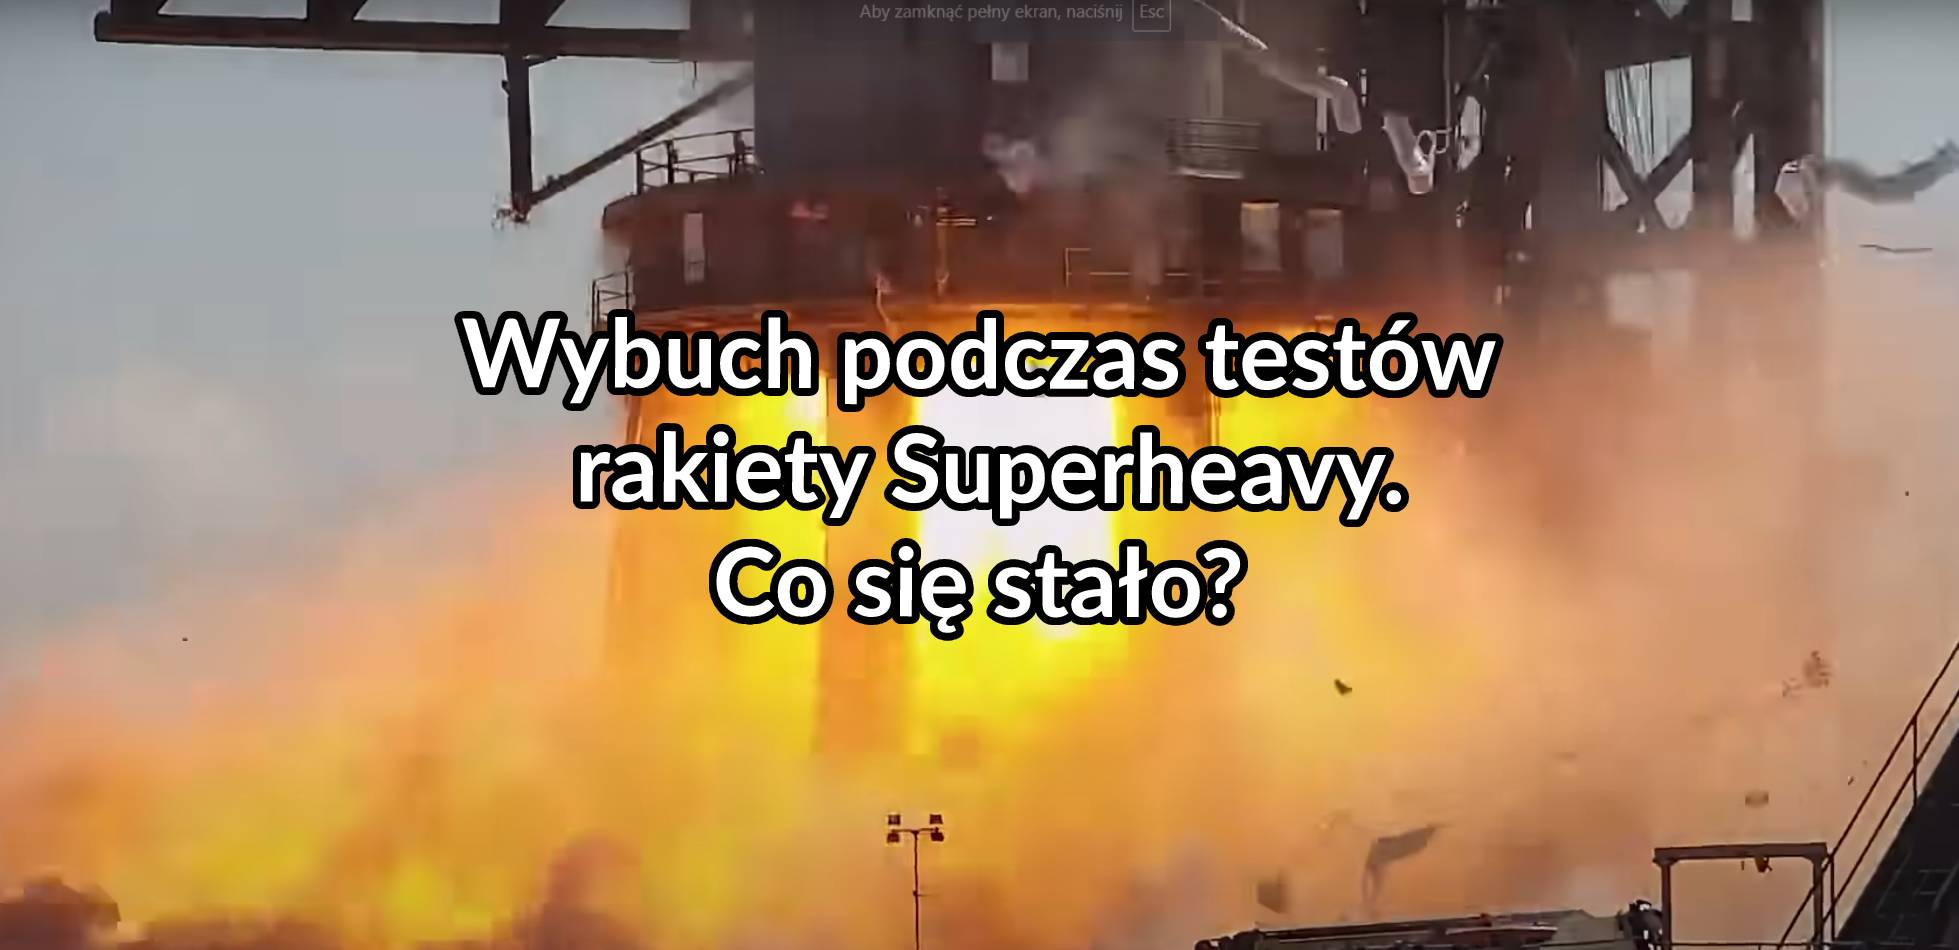 Wybuch podczas testów rakiety Superheavy. Co się stało?